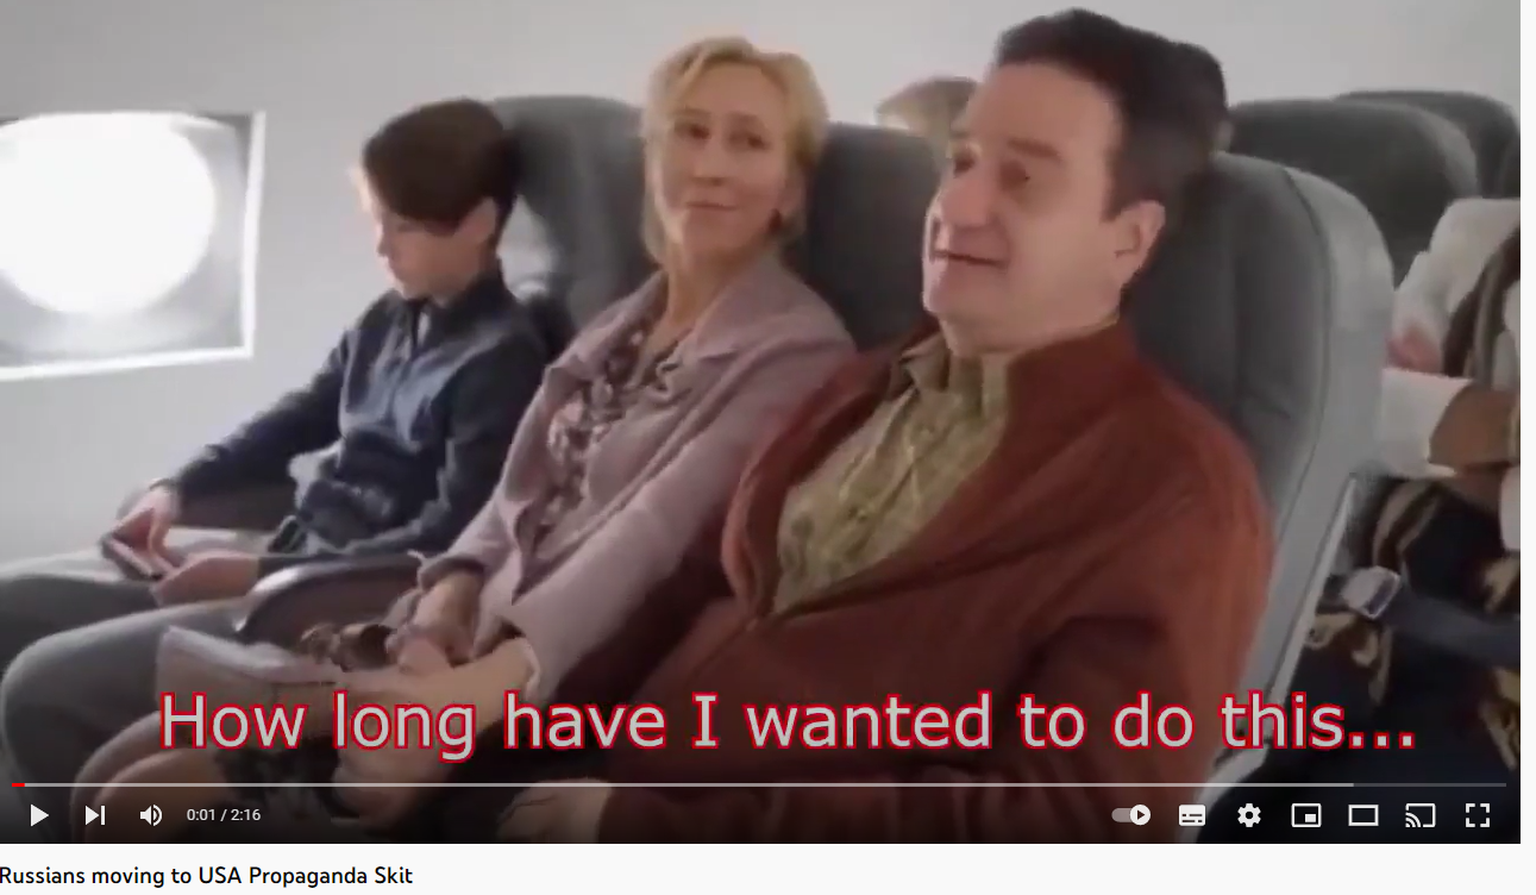 Venemaa  uus propagandavideo naeruvääristab lääne väärtusi. Pildil Vene perekond, kes lendab USA-sse uut elu alustama